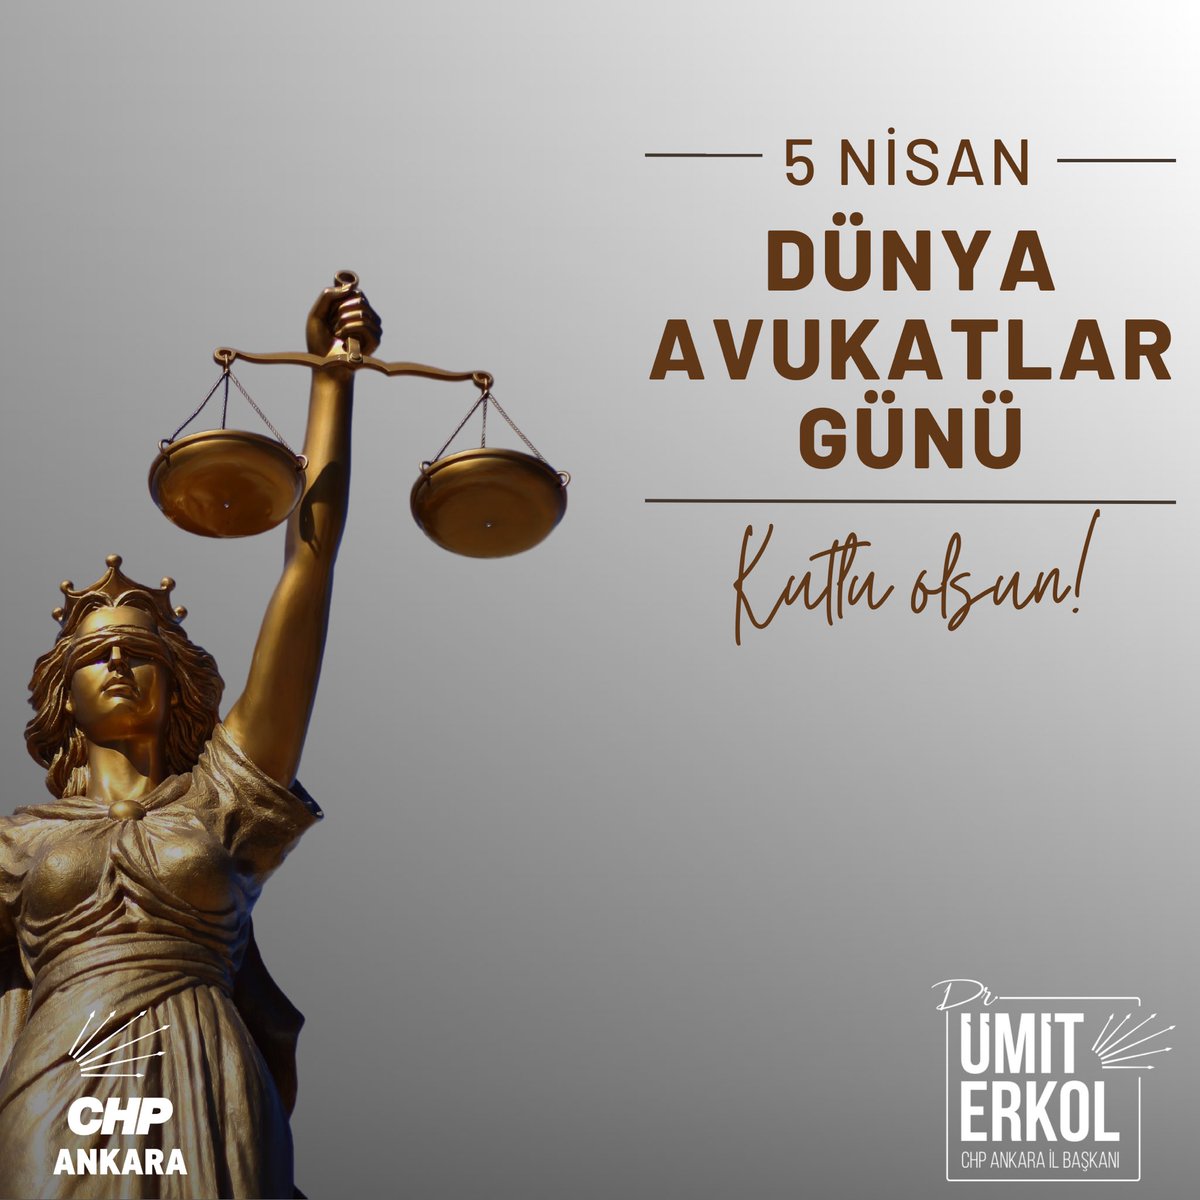 Tüm avukatlarımıza, hukukun üstünlüğünü korumak ve insan haklarını savunmak için verdikleri çabadan dolayı teşekkür ediyoruz. Adaletin için çalışan tüm avukatlarımızın günü kutlu olsun.